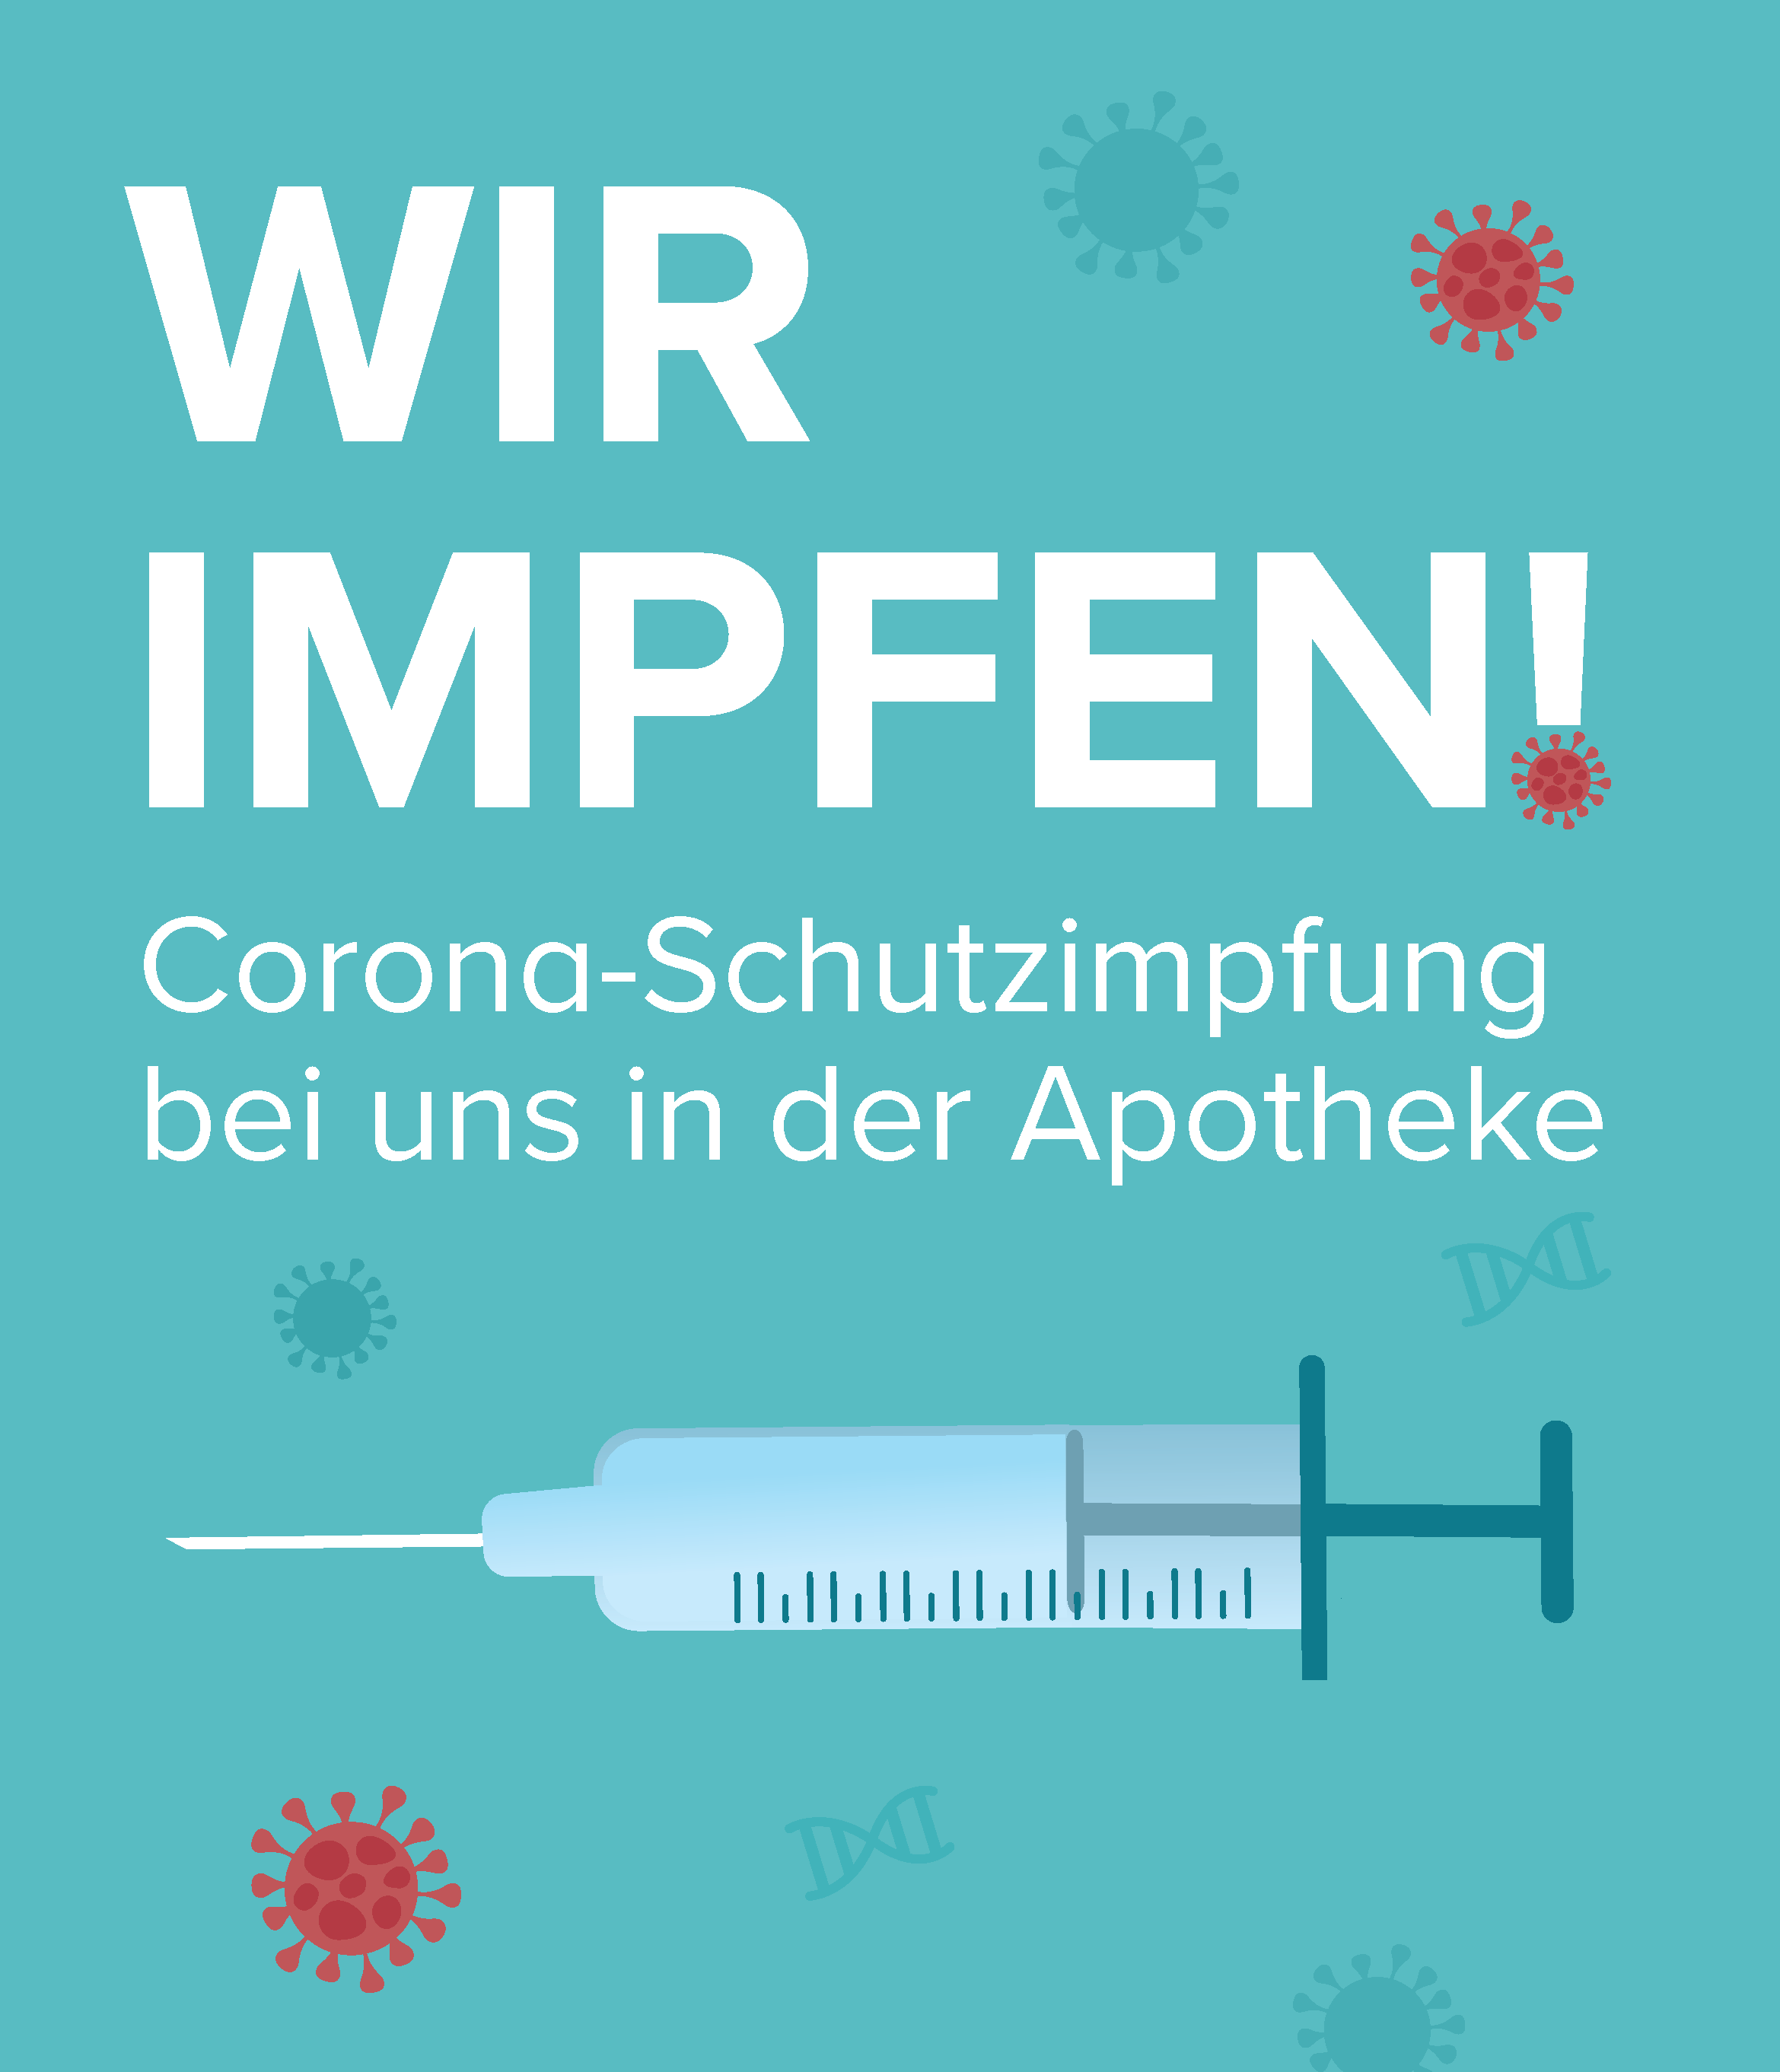 Wir impfen gegen Corona und Grippe